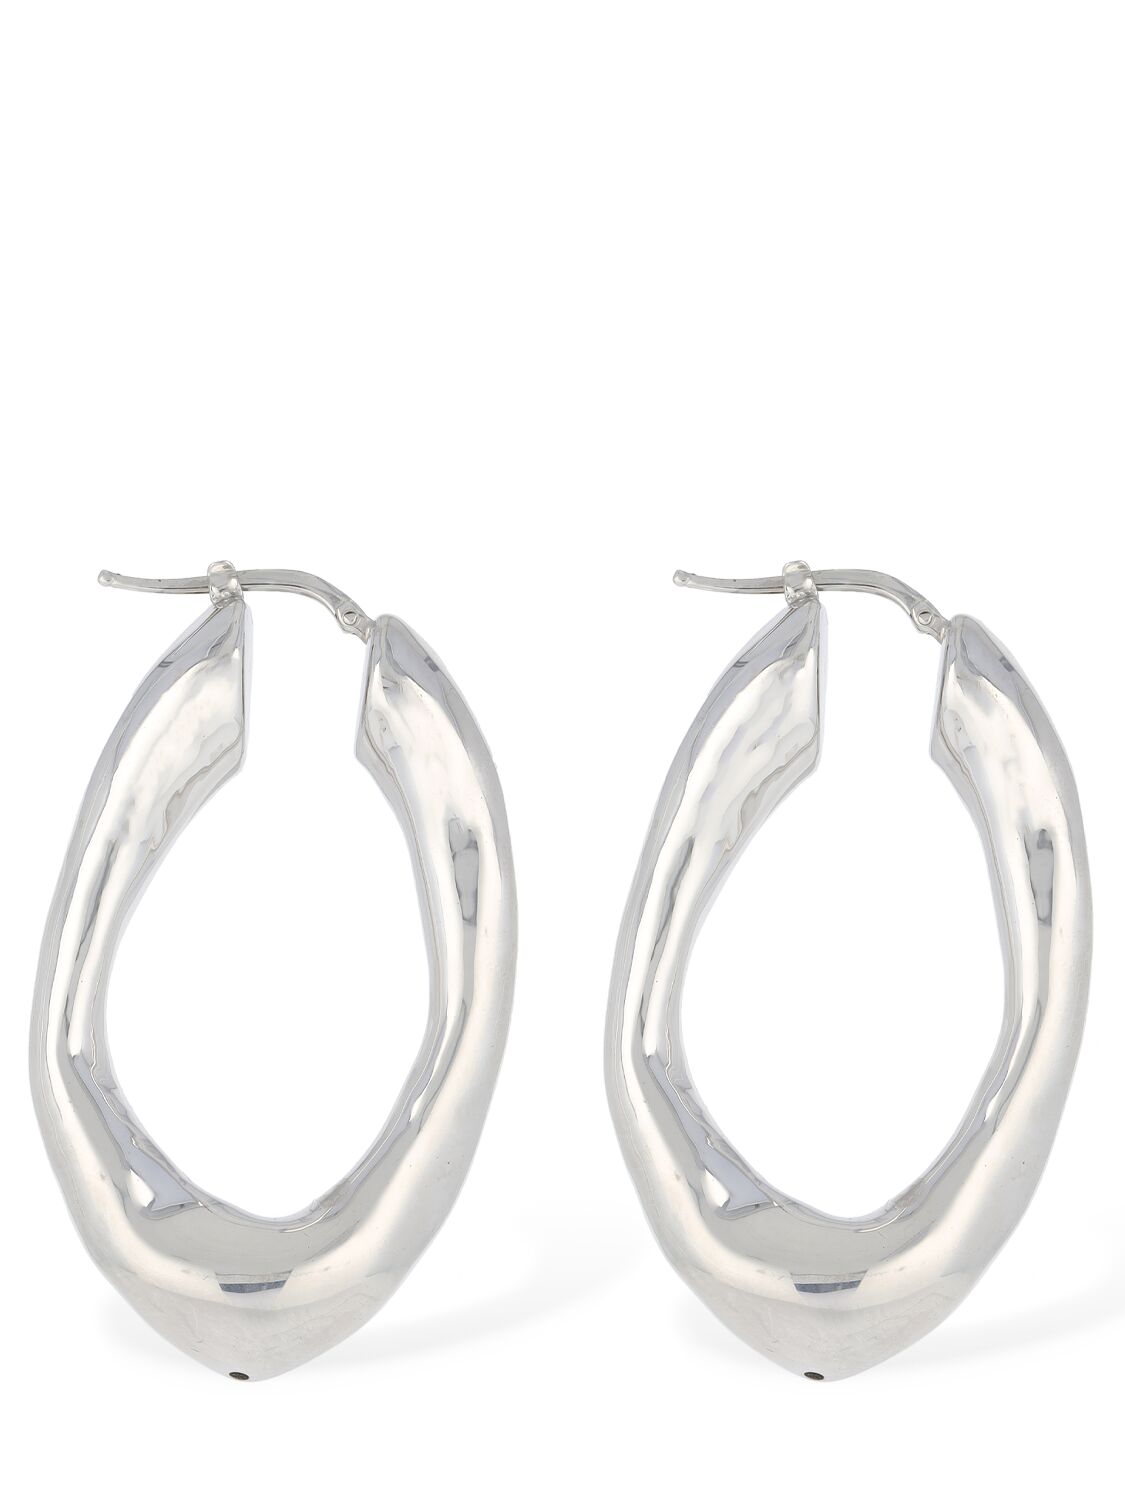 Image of Bw5 2 Medium Hoop Earrings